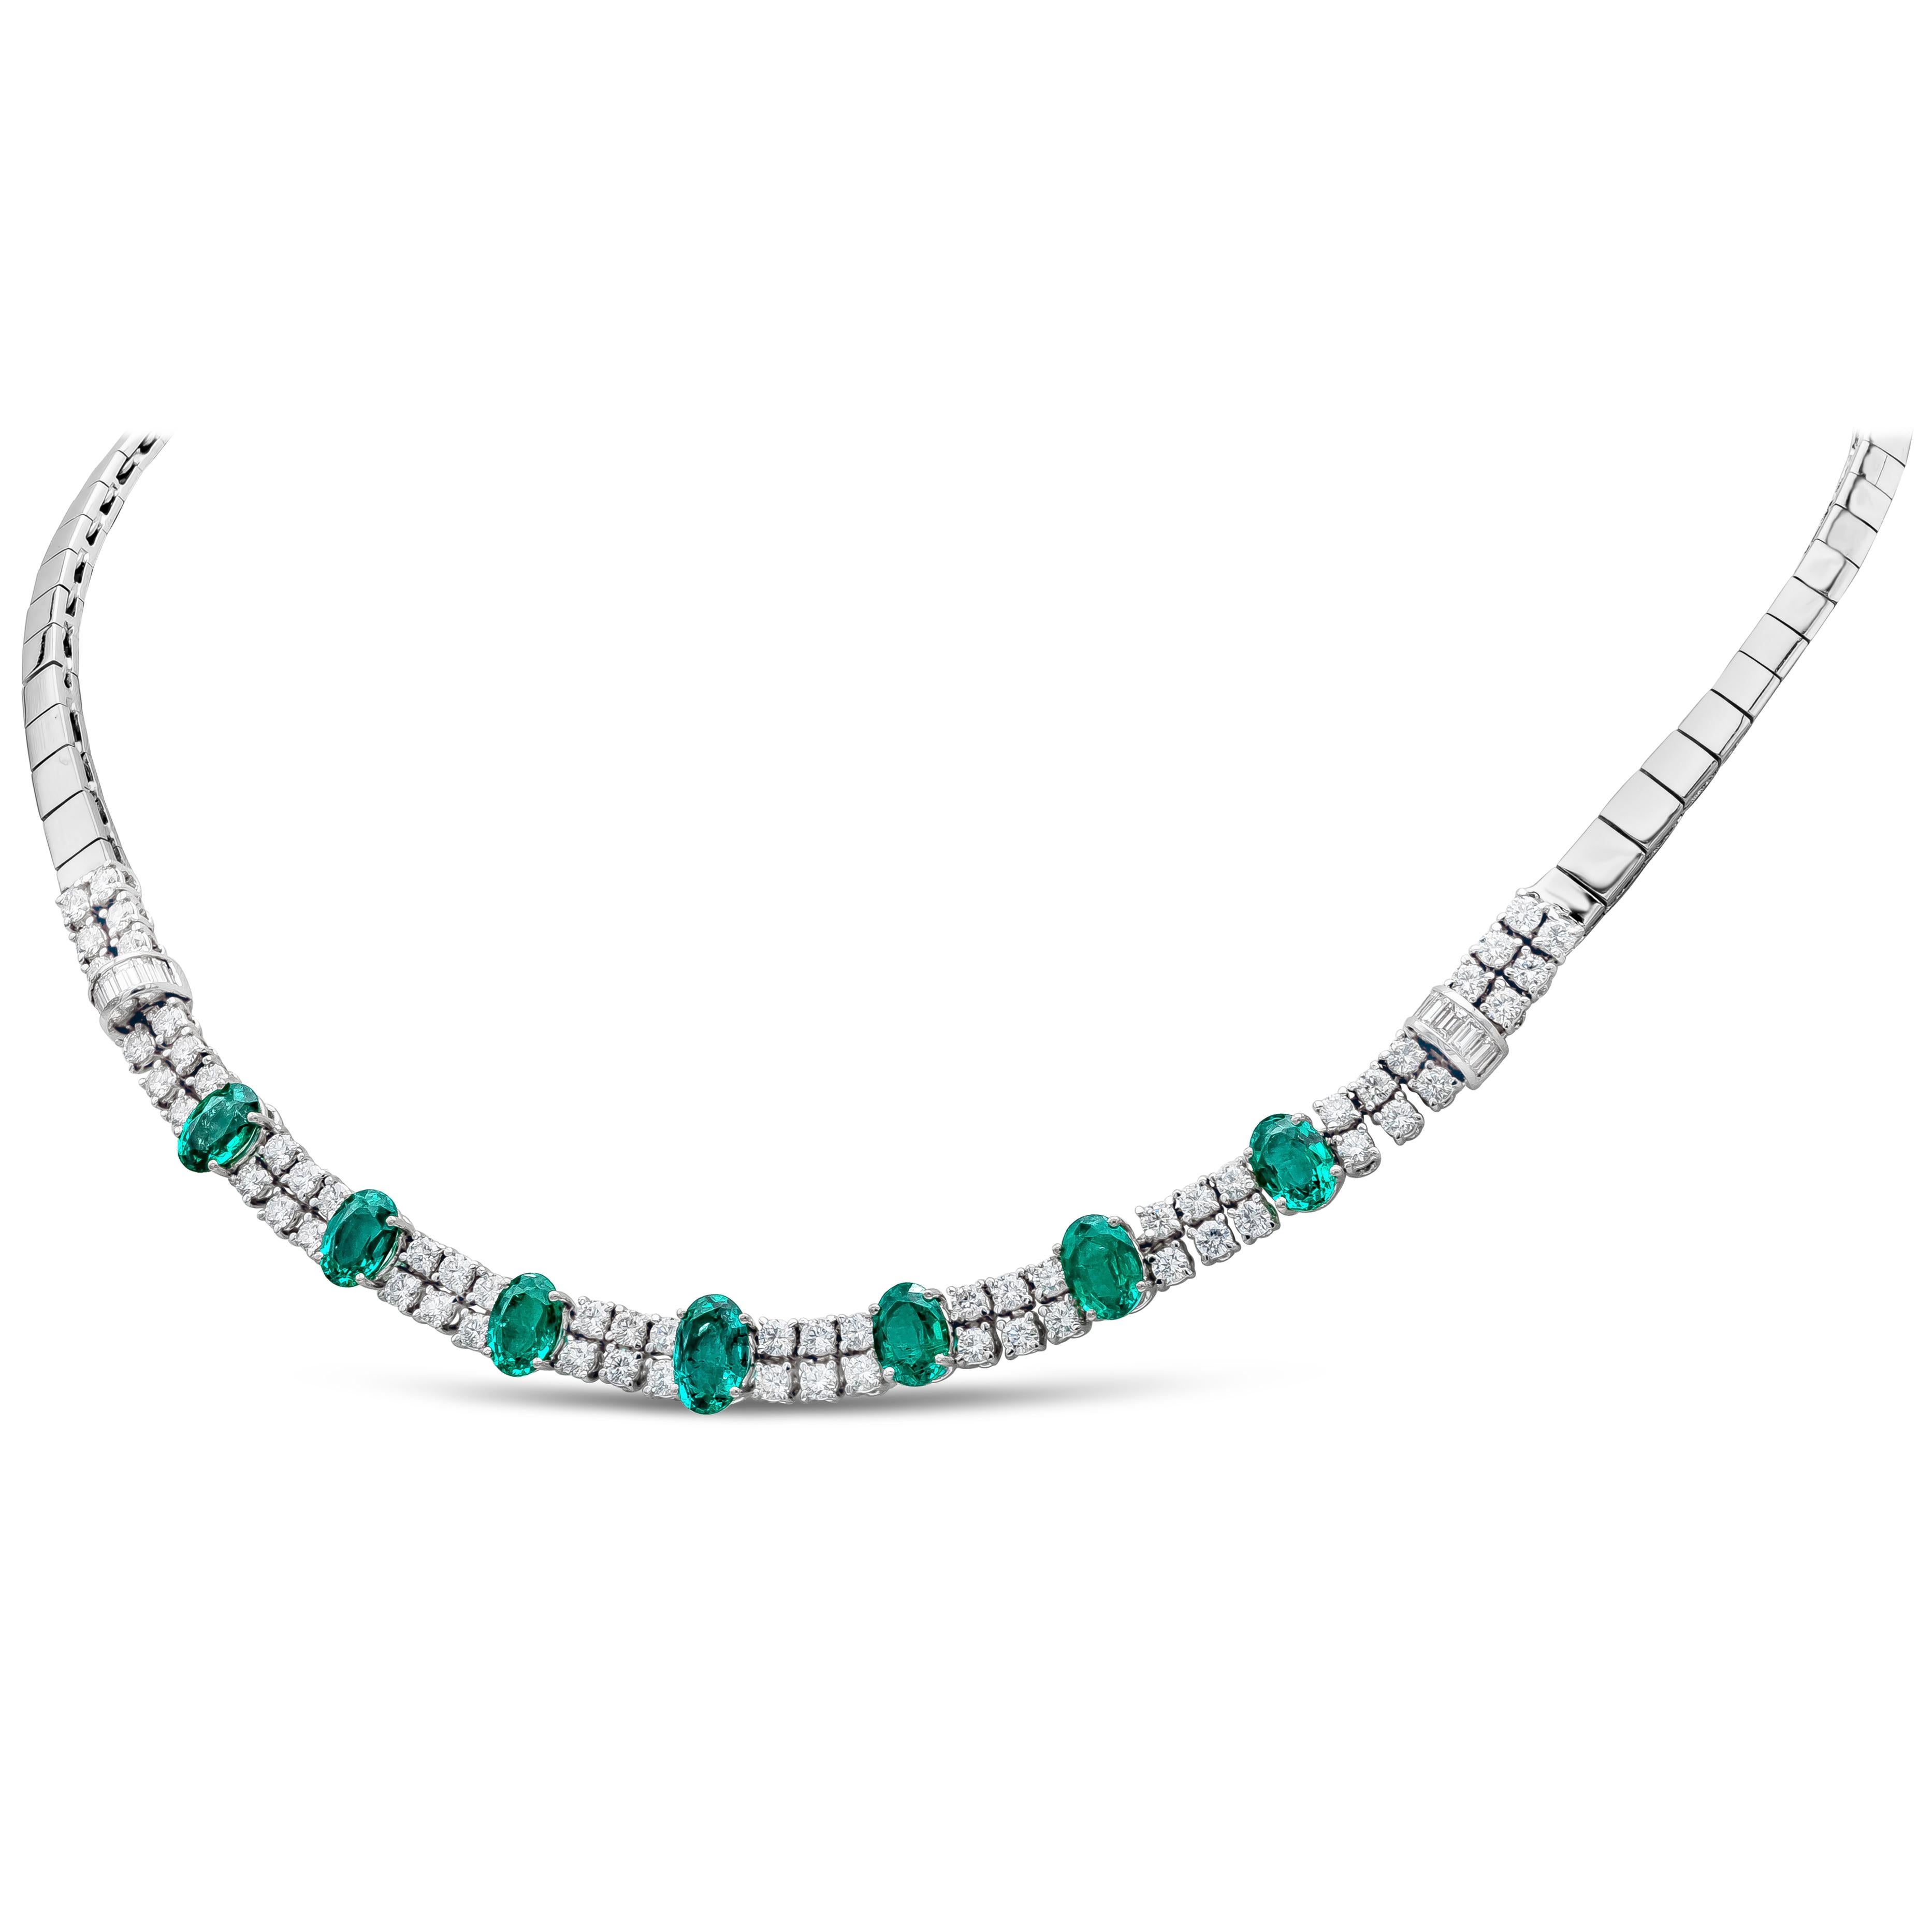 Modische Halskette mit 7 natürlichen grünen Smaragden von 5,66 Karat. Jeder Smaragd ist mit 2 Reihen runder Brillanten besetzt, Baguette-Diamanten sind in einem kreisförmigen Design auf jeder Seite der Halskette angebracht. Diamanten von insgesamt